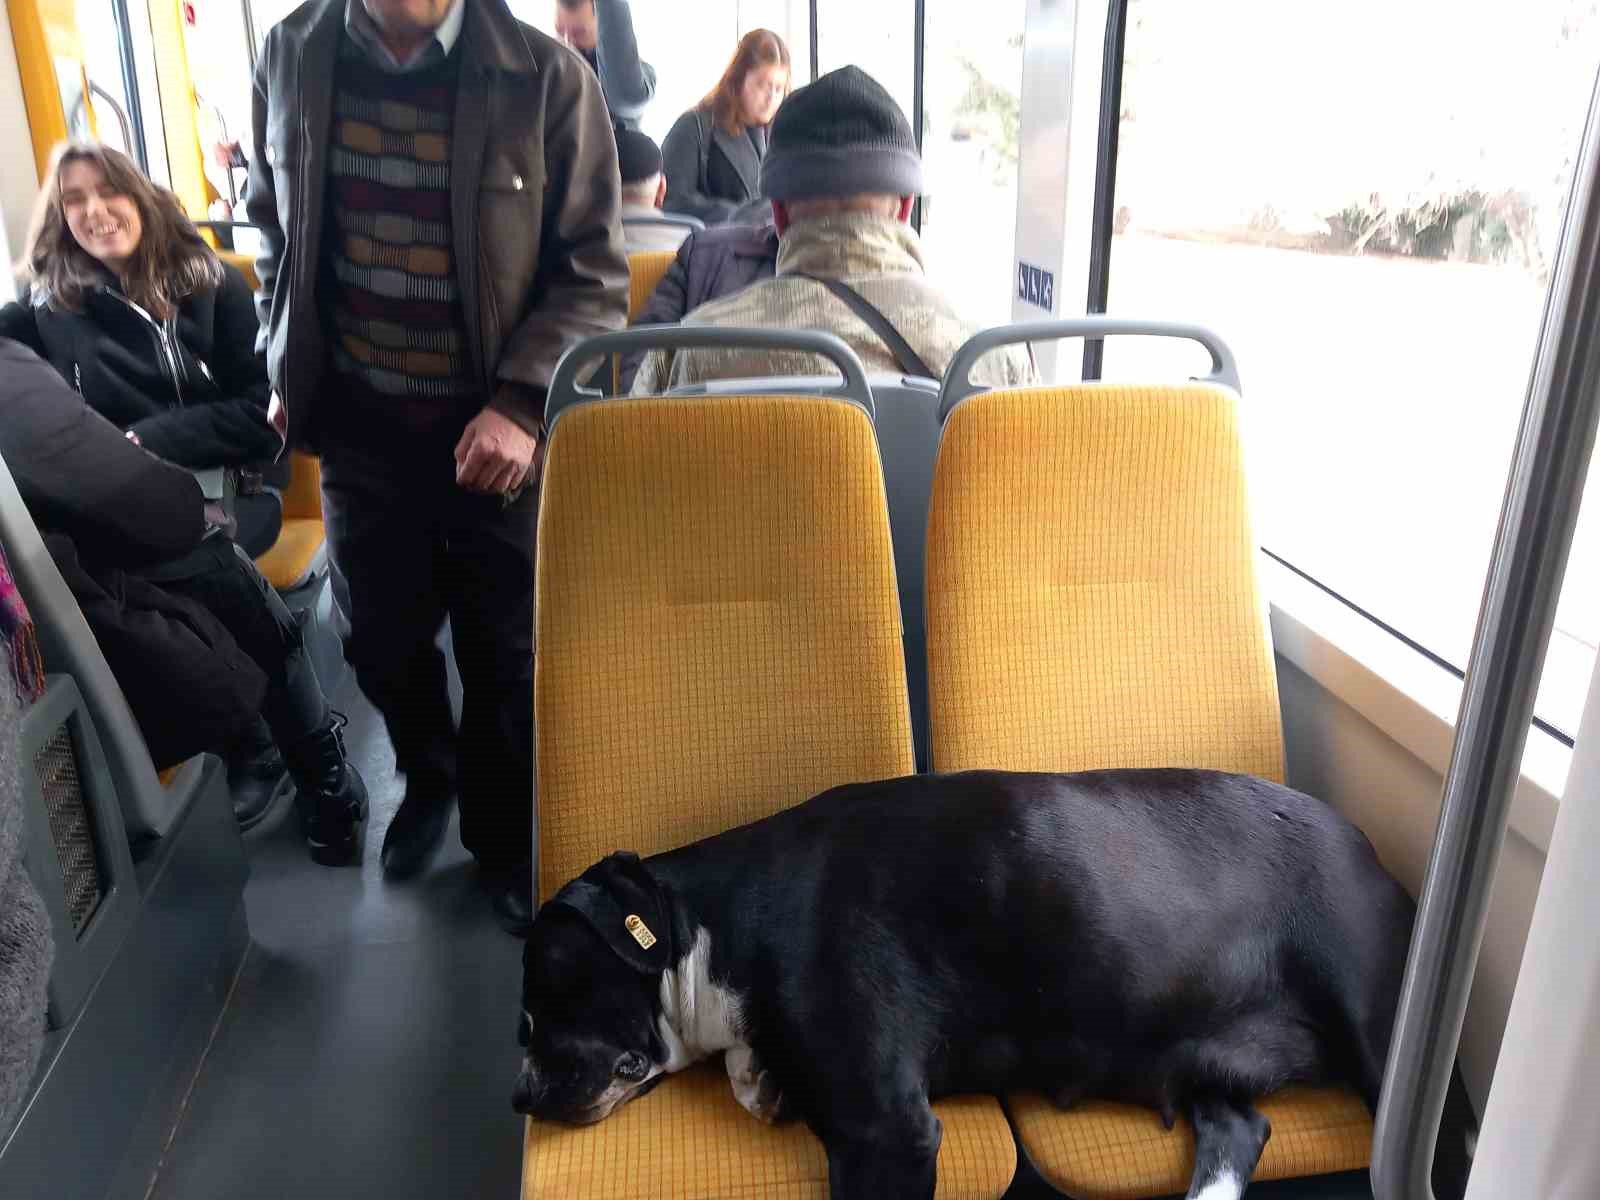 köpek koltukta uyudu, yolcu ayakta seyahat yaptı